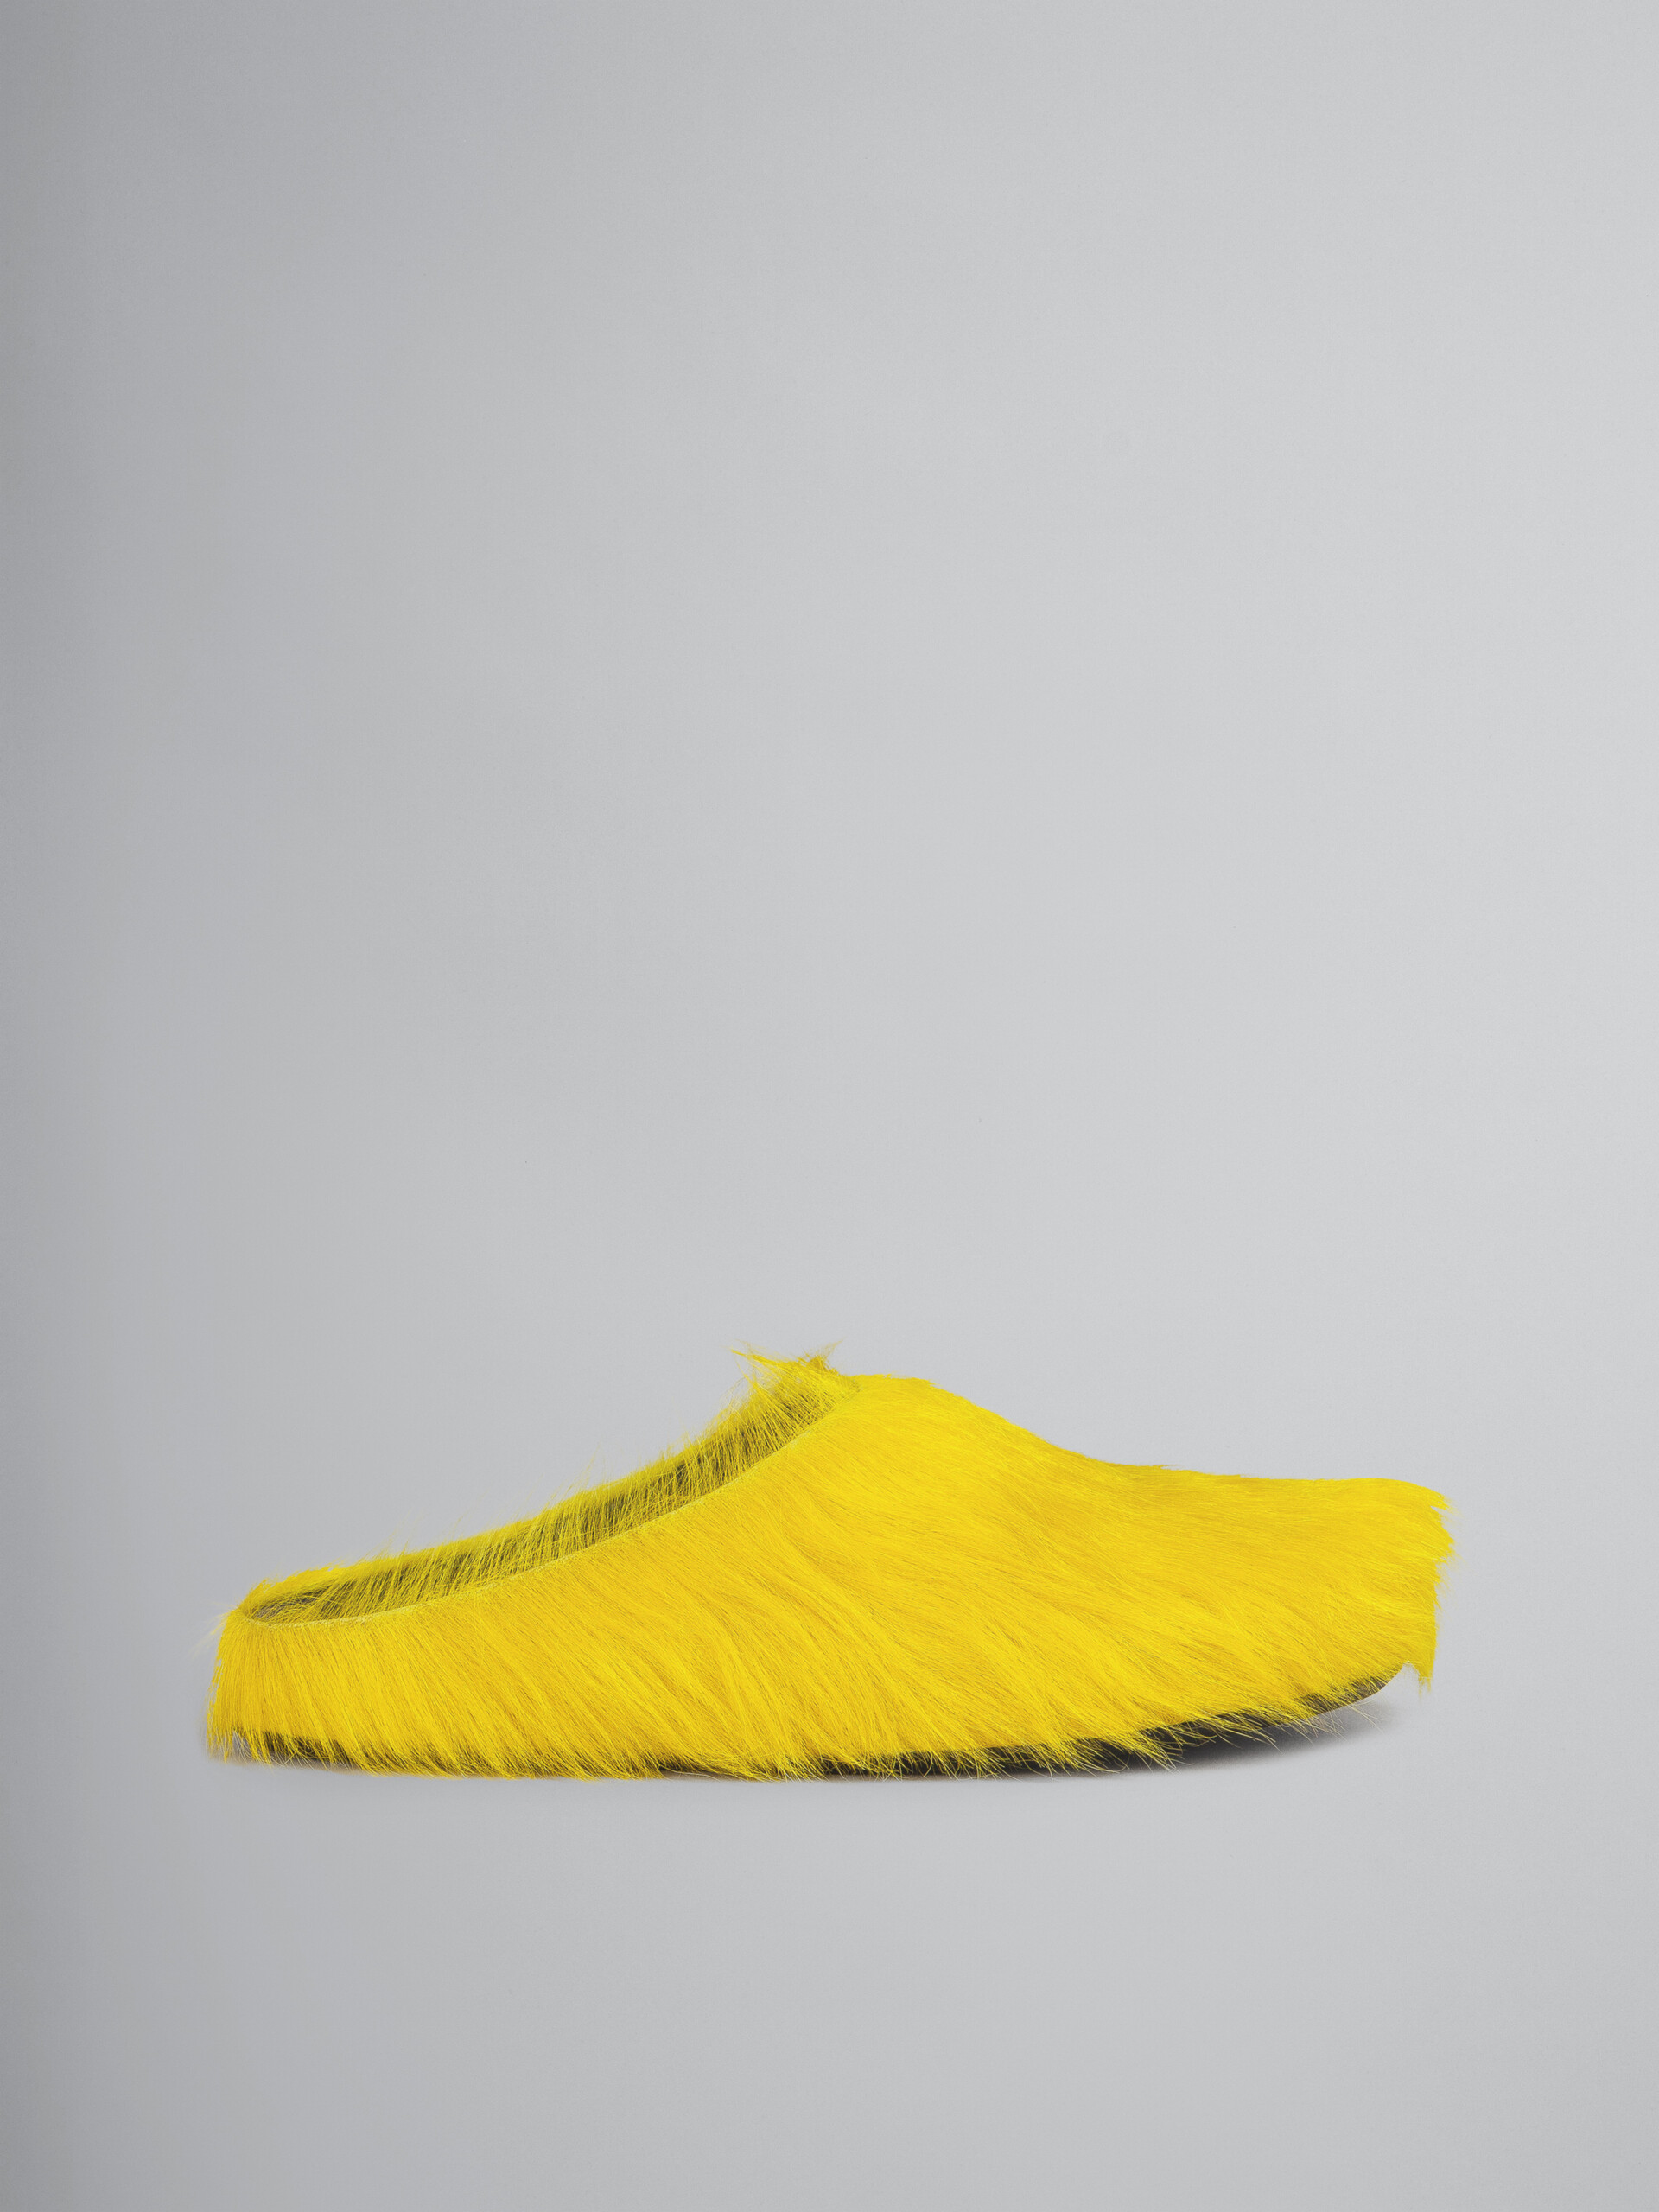 Zueco fussbett de piel amarilla con efecto pelo - Zuecos - Image 1